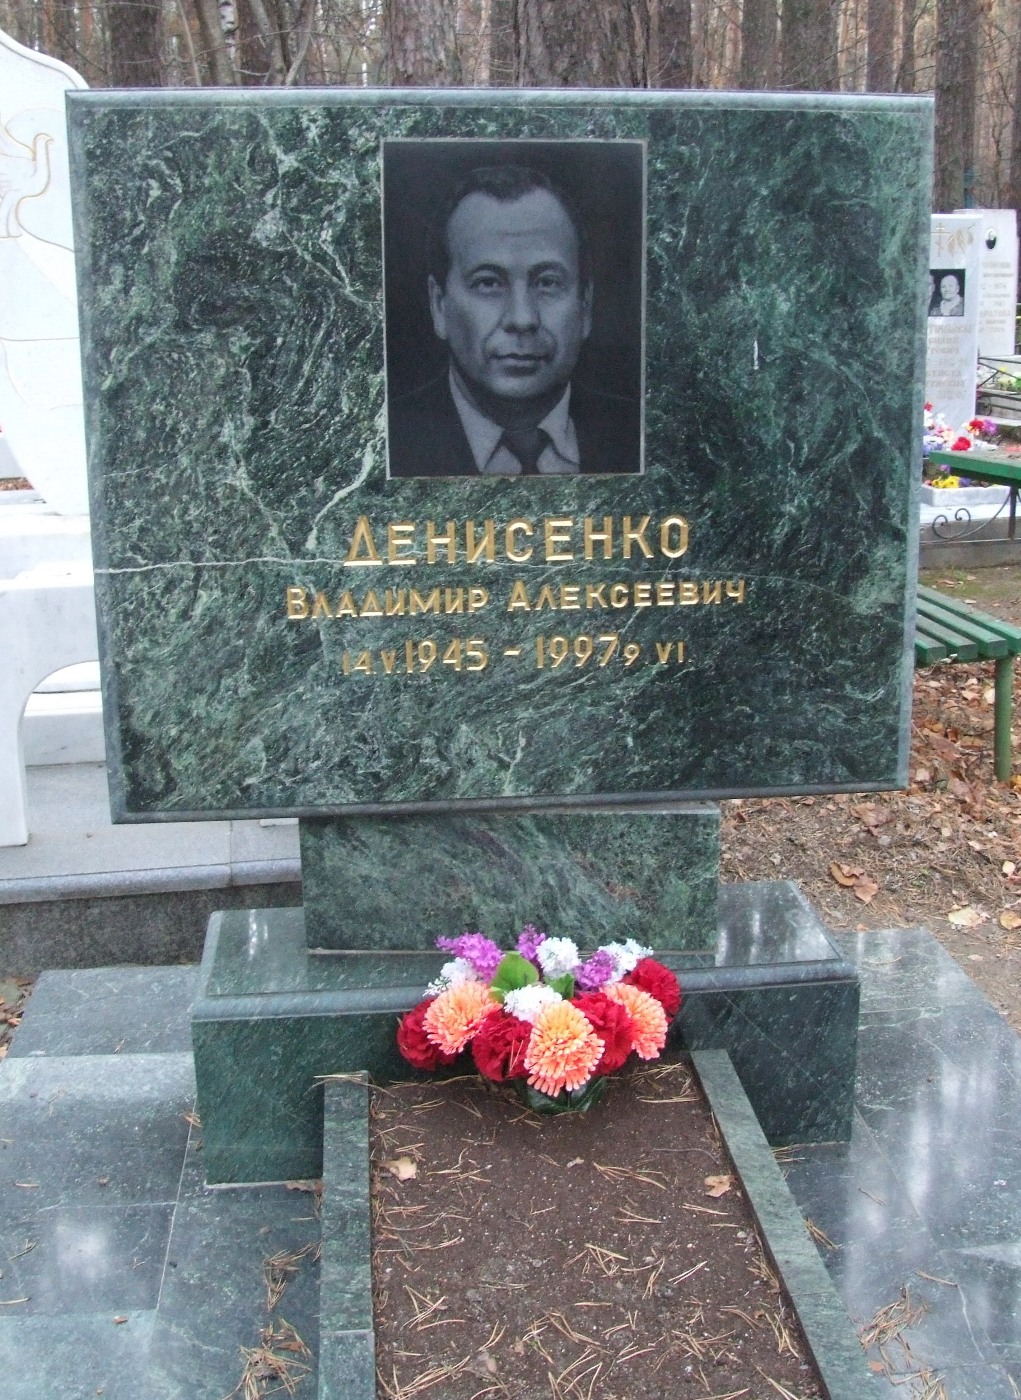 Надгробие Денисенко В.А. (1945-1997), Екатеринбург, Широкореченское кладбие, секция Почетных захоронений.